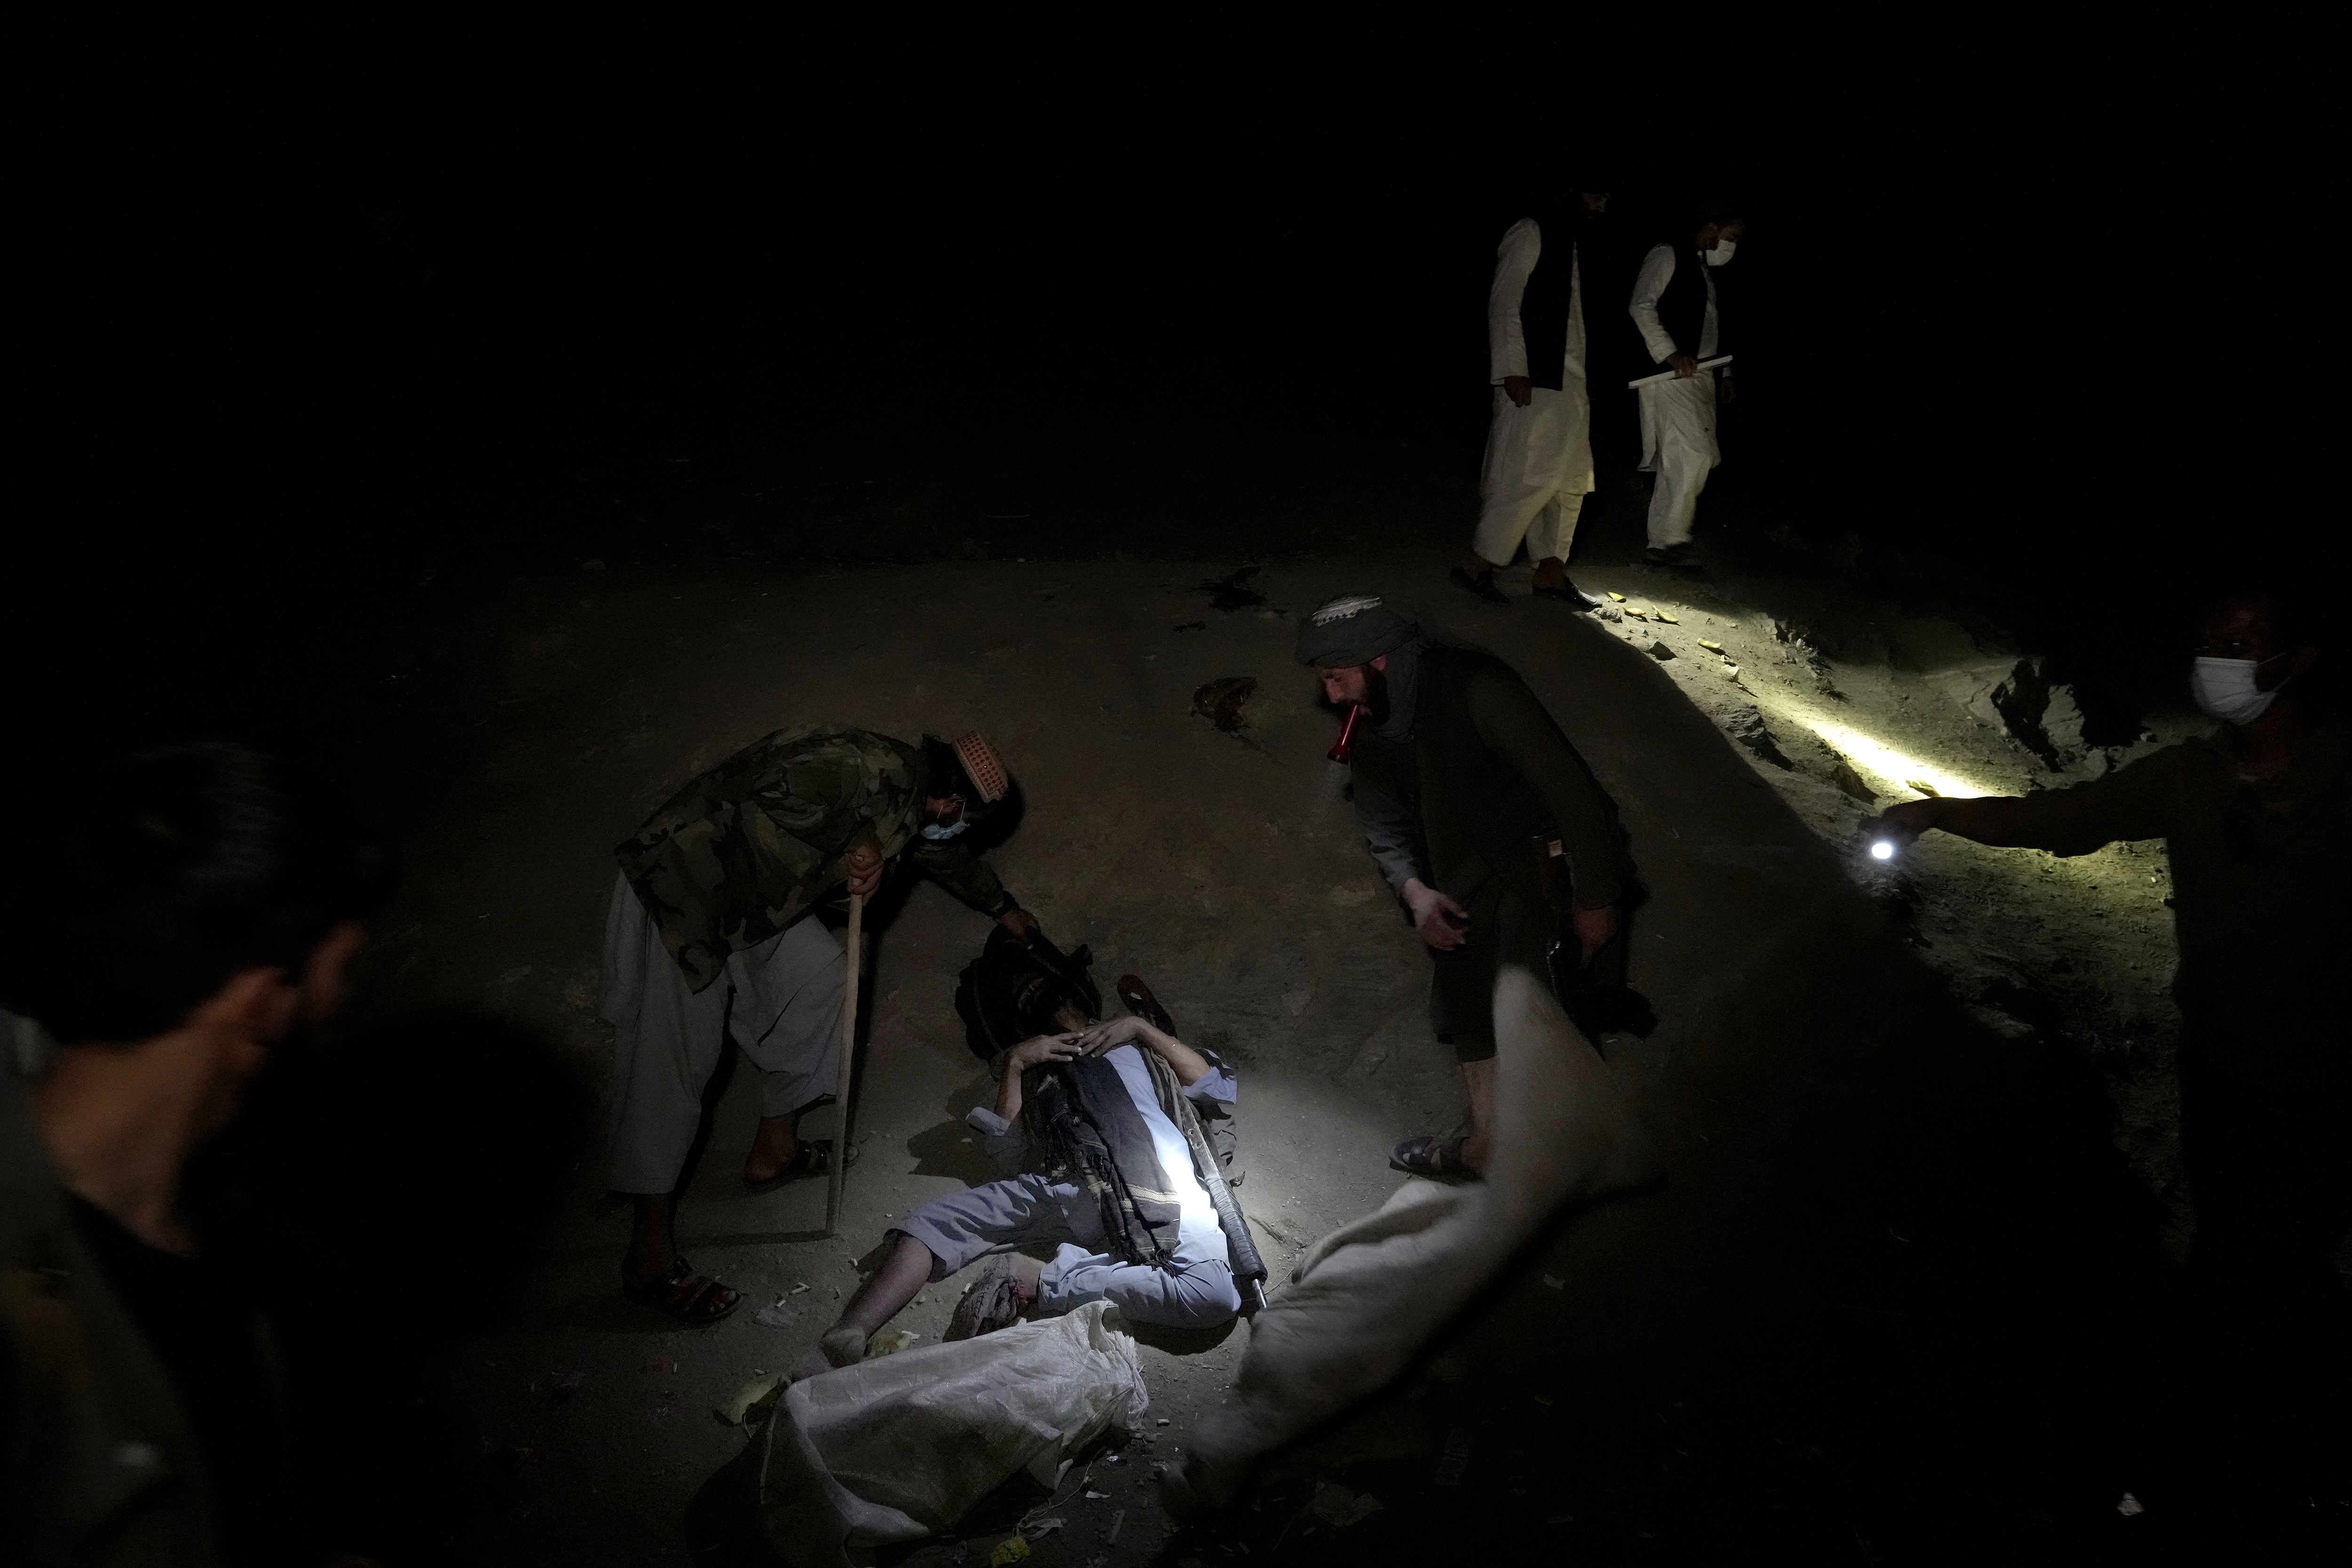 Los talibanes han lanzado una agresiva campaña para erradicar el cultivo de adormidera. Pero bajo su régimen la adicción crece (AP Photo/Ebrahim Noroozi)